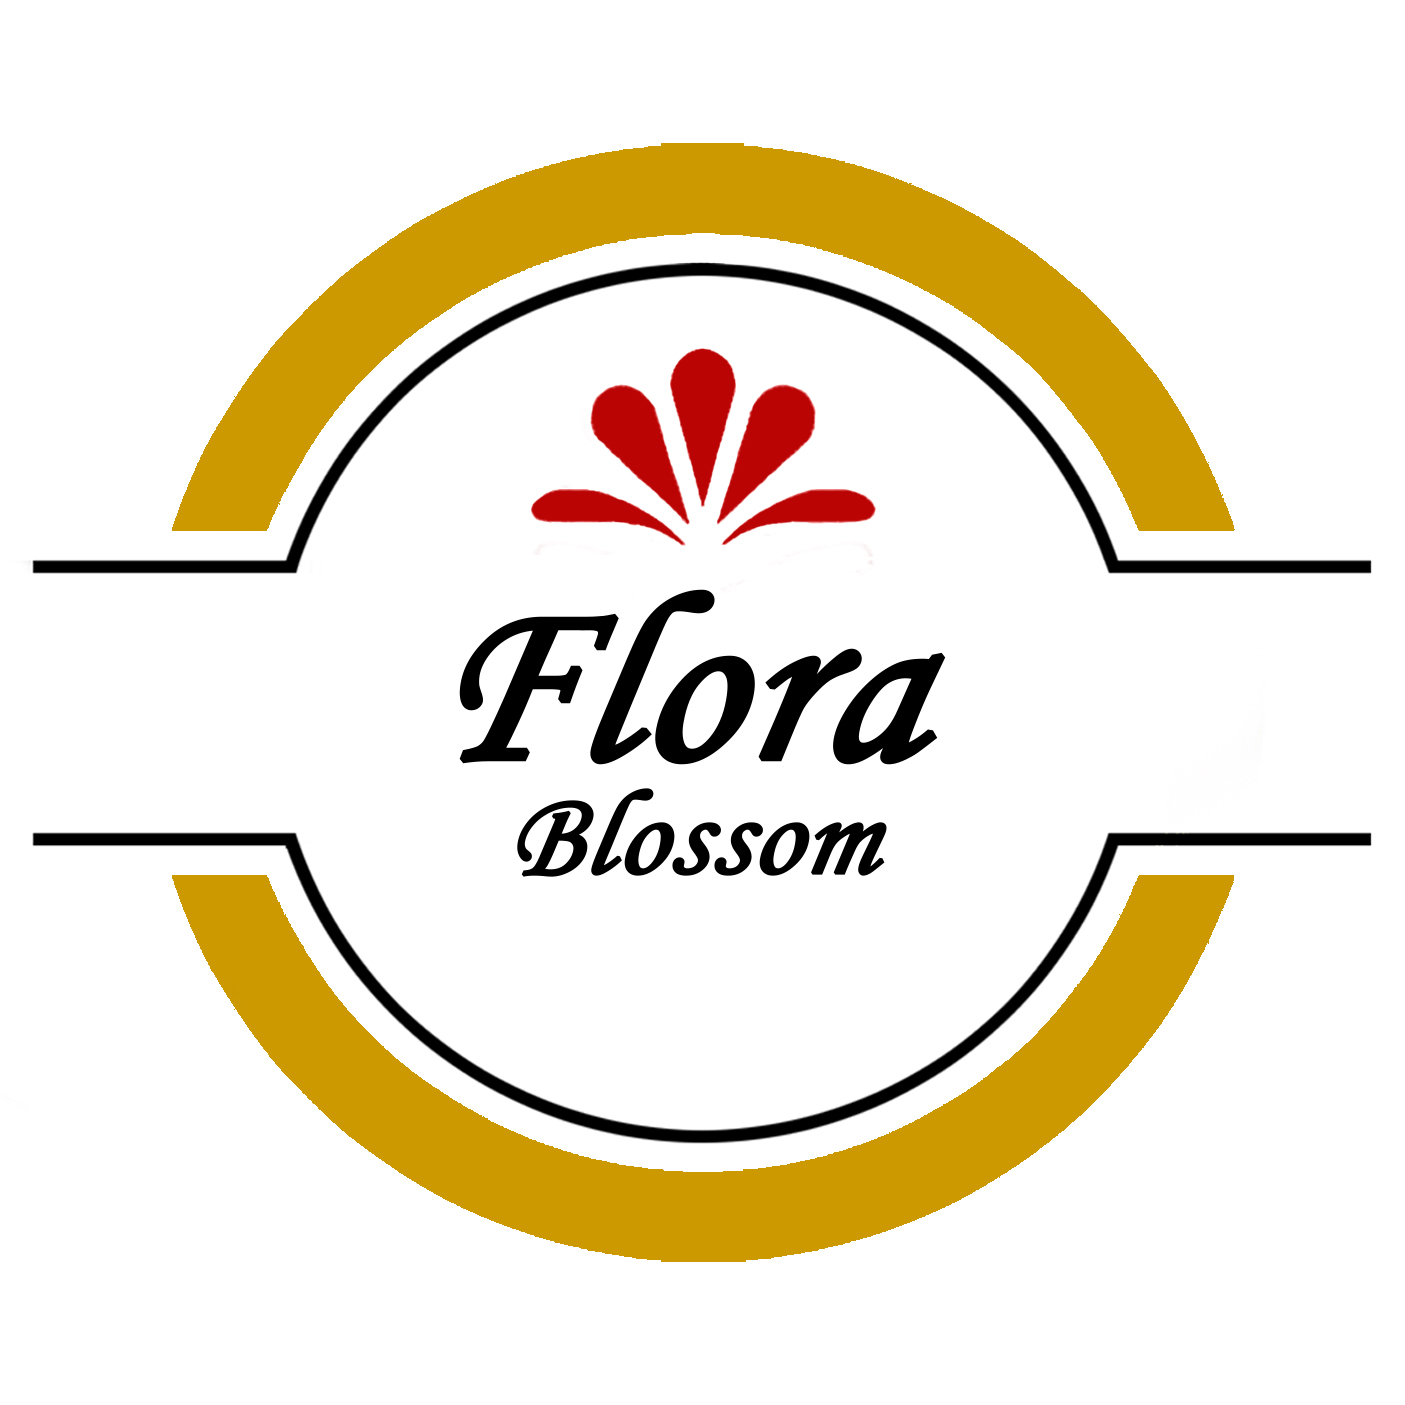 Flora Blossom
Gewürze, Kräuter und Safren Online auf www.shop-flora.com kaufen.